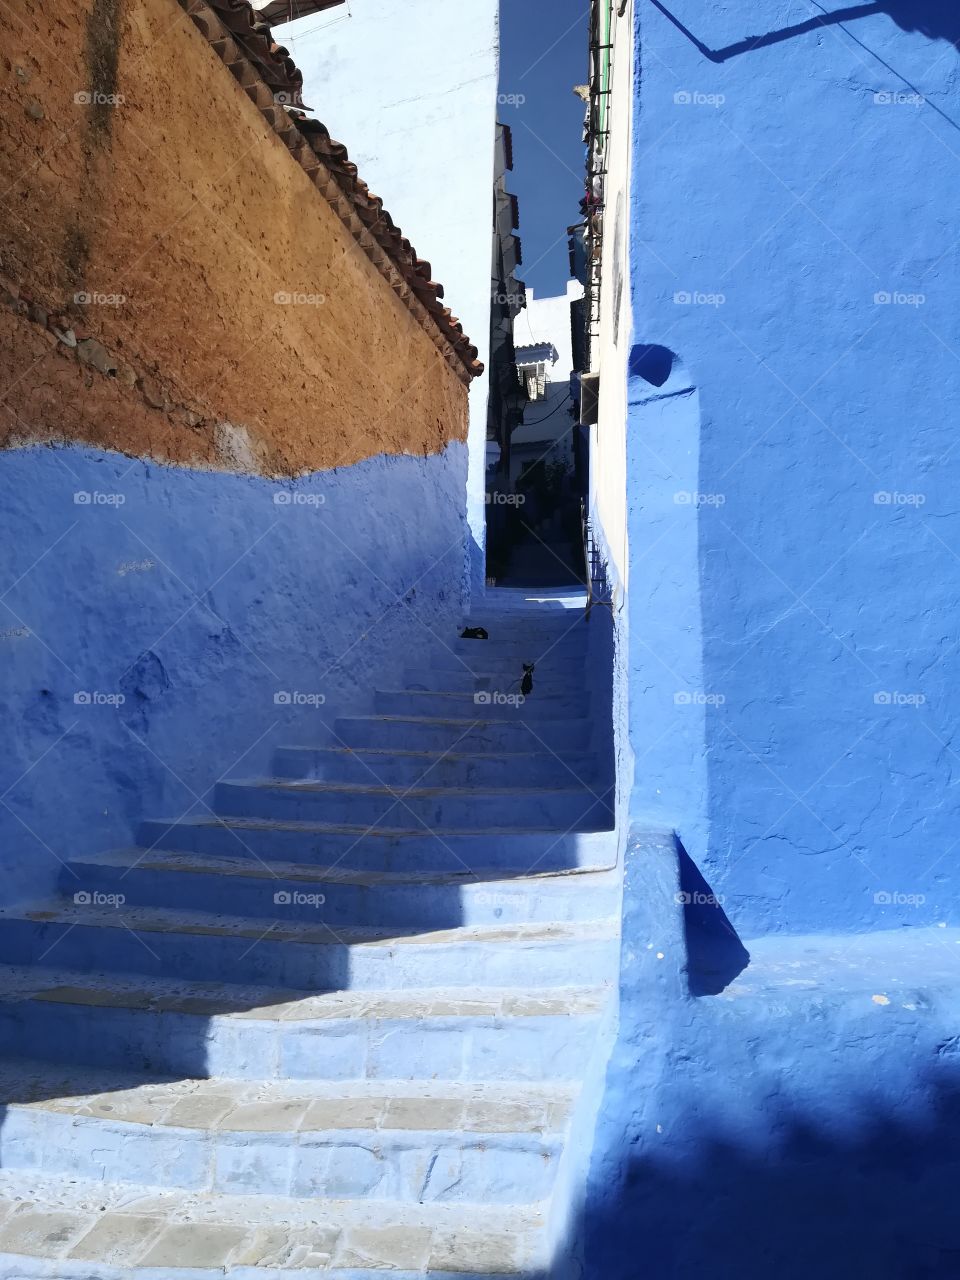 Morocco bleu city